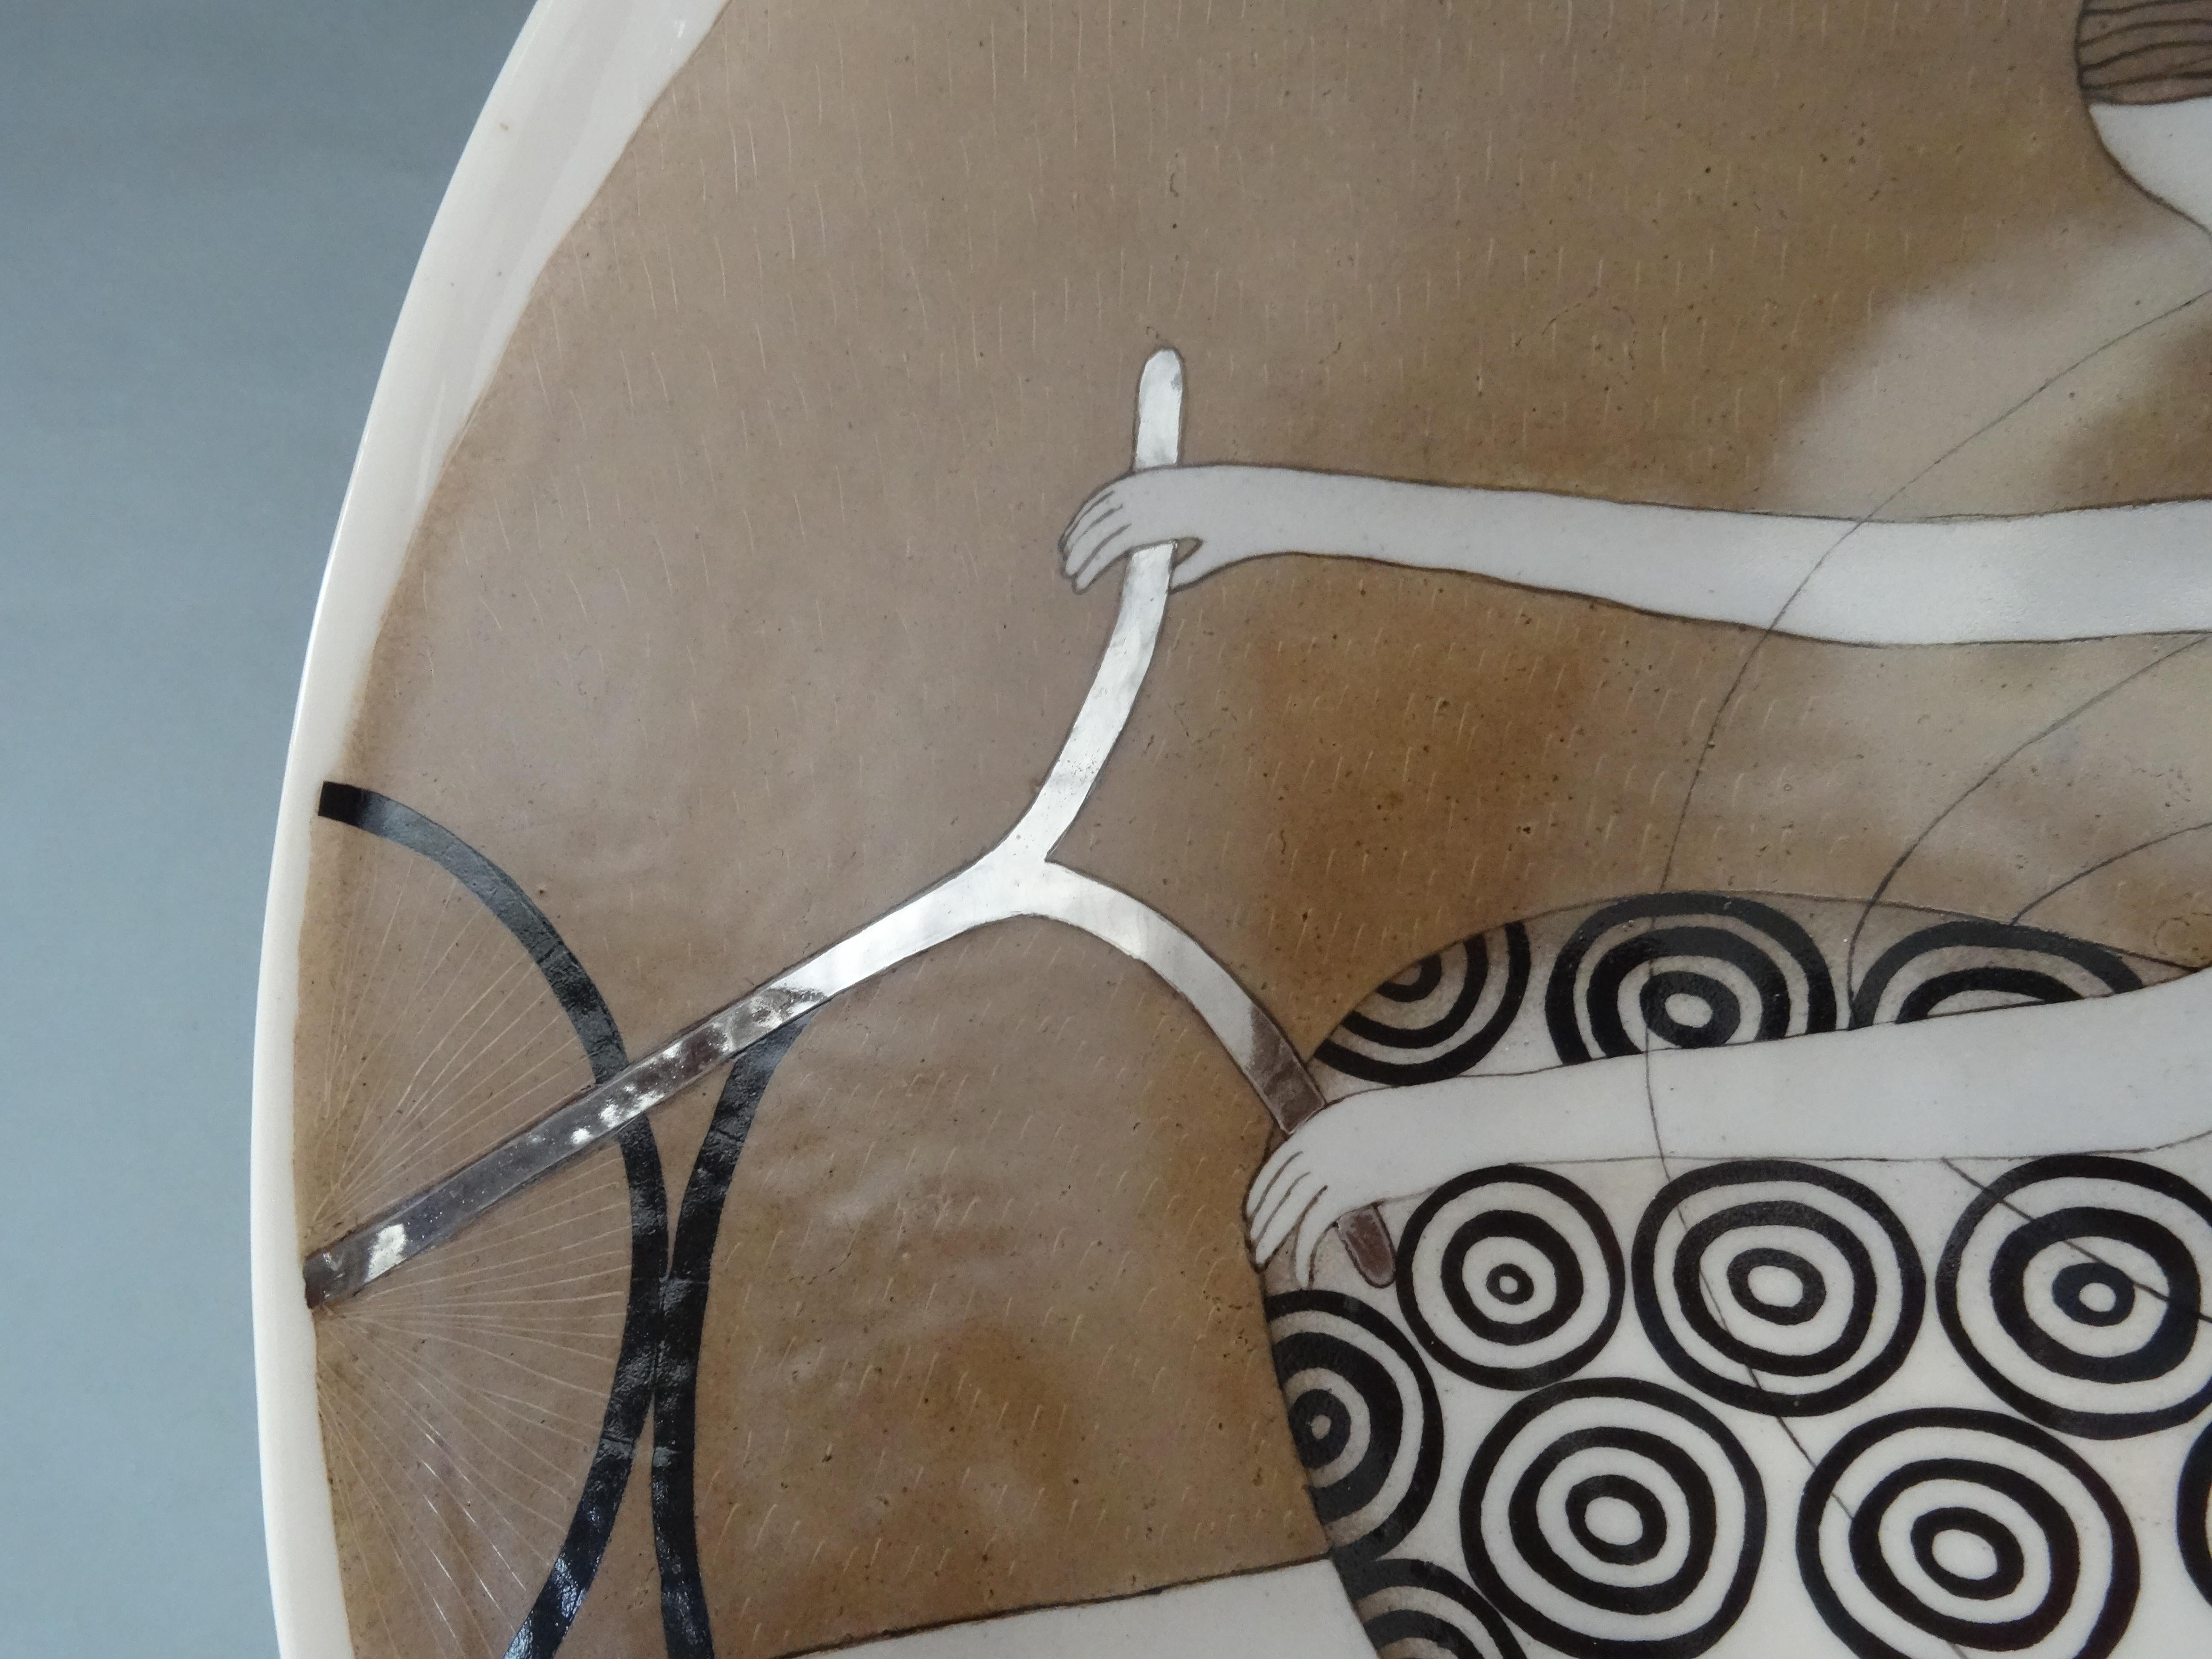 Porzellanteller - Ein Radfahrer mit Flügeln. 2016, d 36 cm

Dieser Porzellanteller, der eine Figur in Bewegung darstellt, ist ein bemerkenswertes Kunstwerk, das Laune und Kreativität vereint. Der aus zartem Porzellan gefertigte Teller hat einen